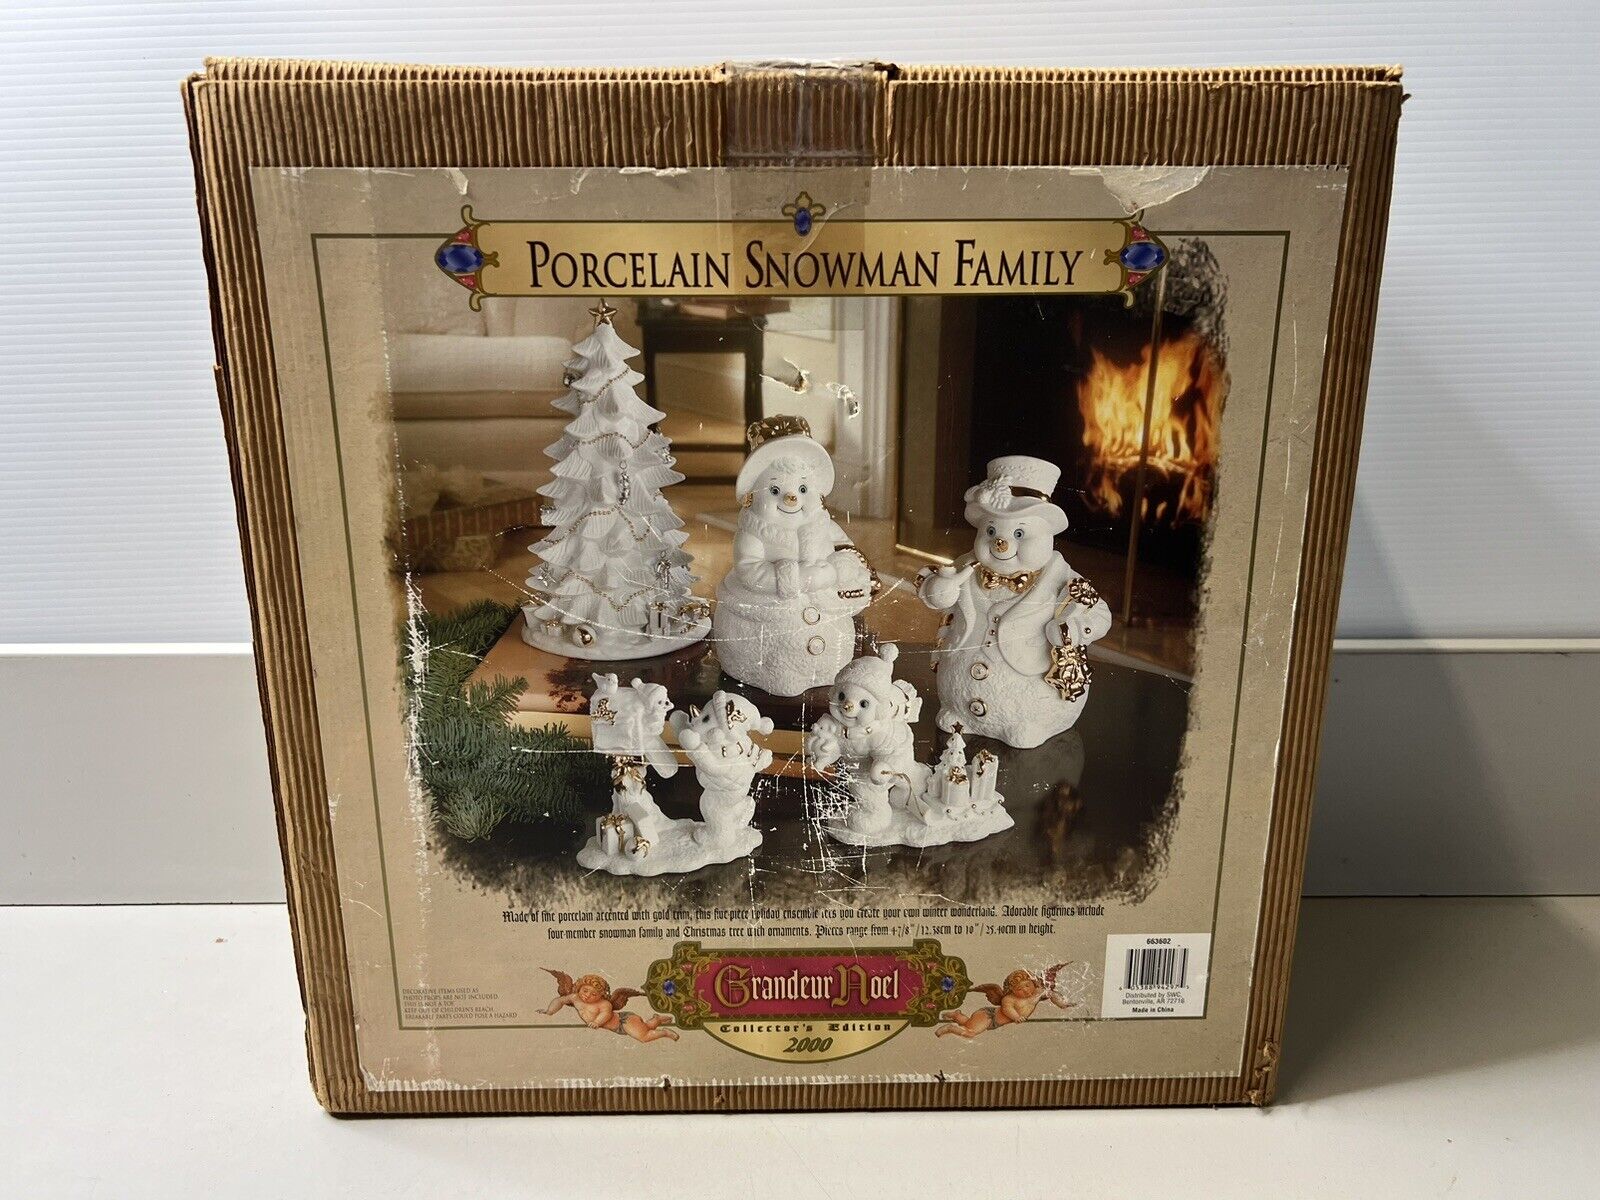 Grandeur Noel Porcelain Snowman Family 5 Piece Set - 2000 - Christmas Decoration